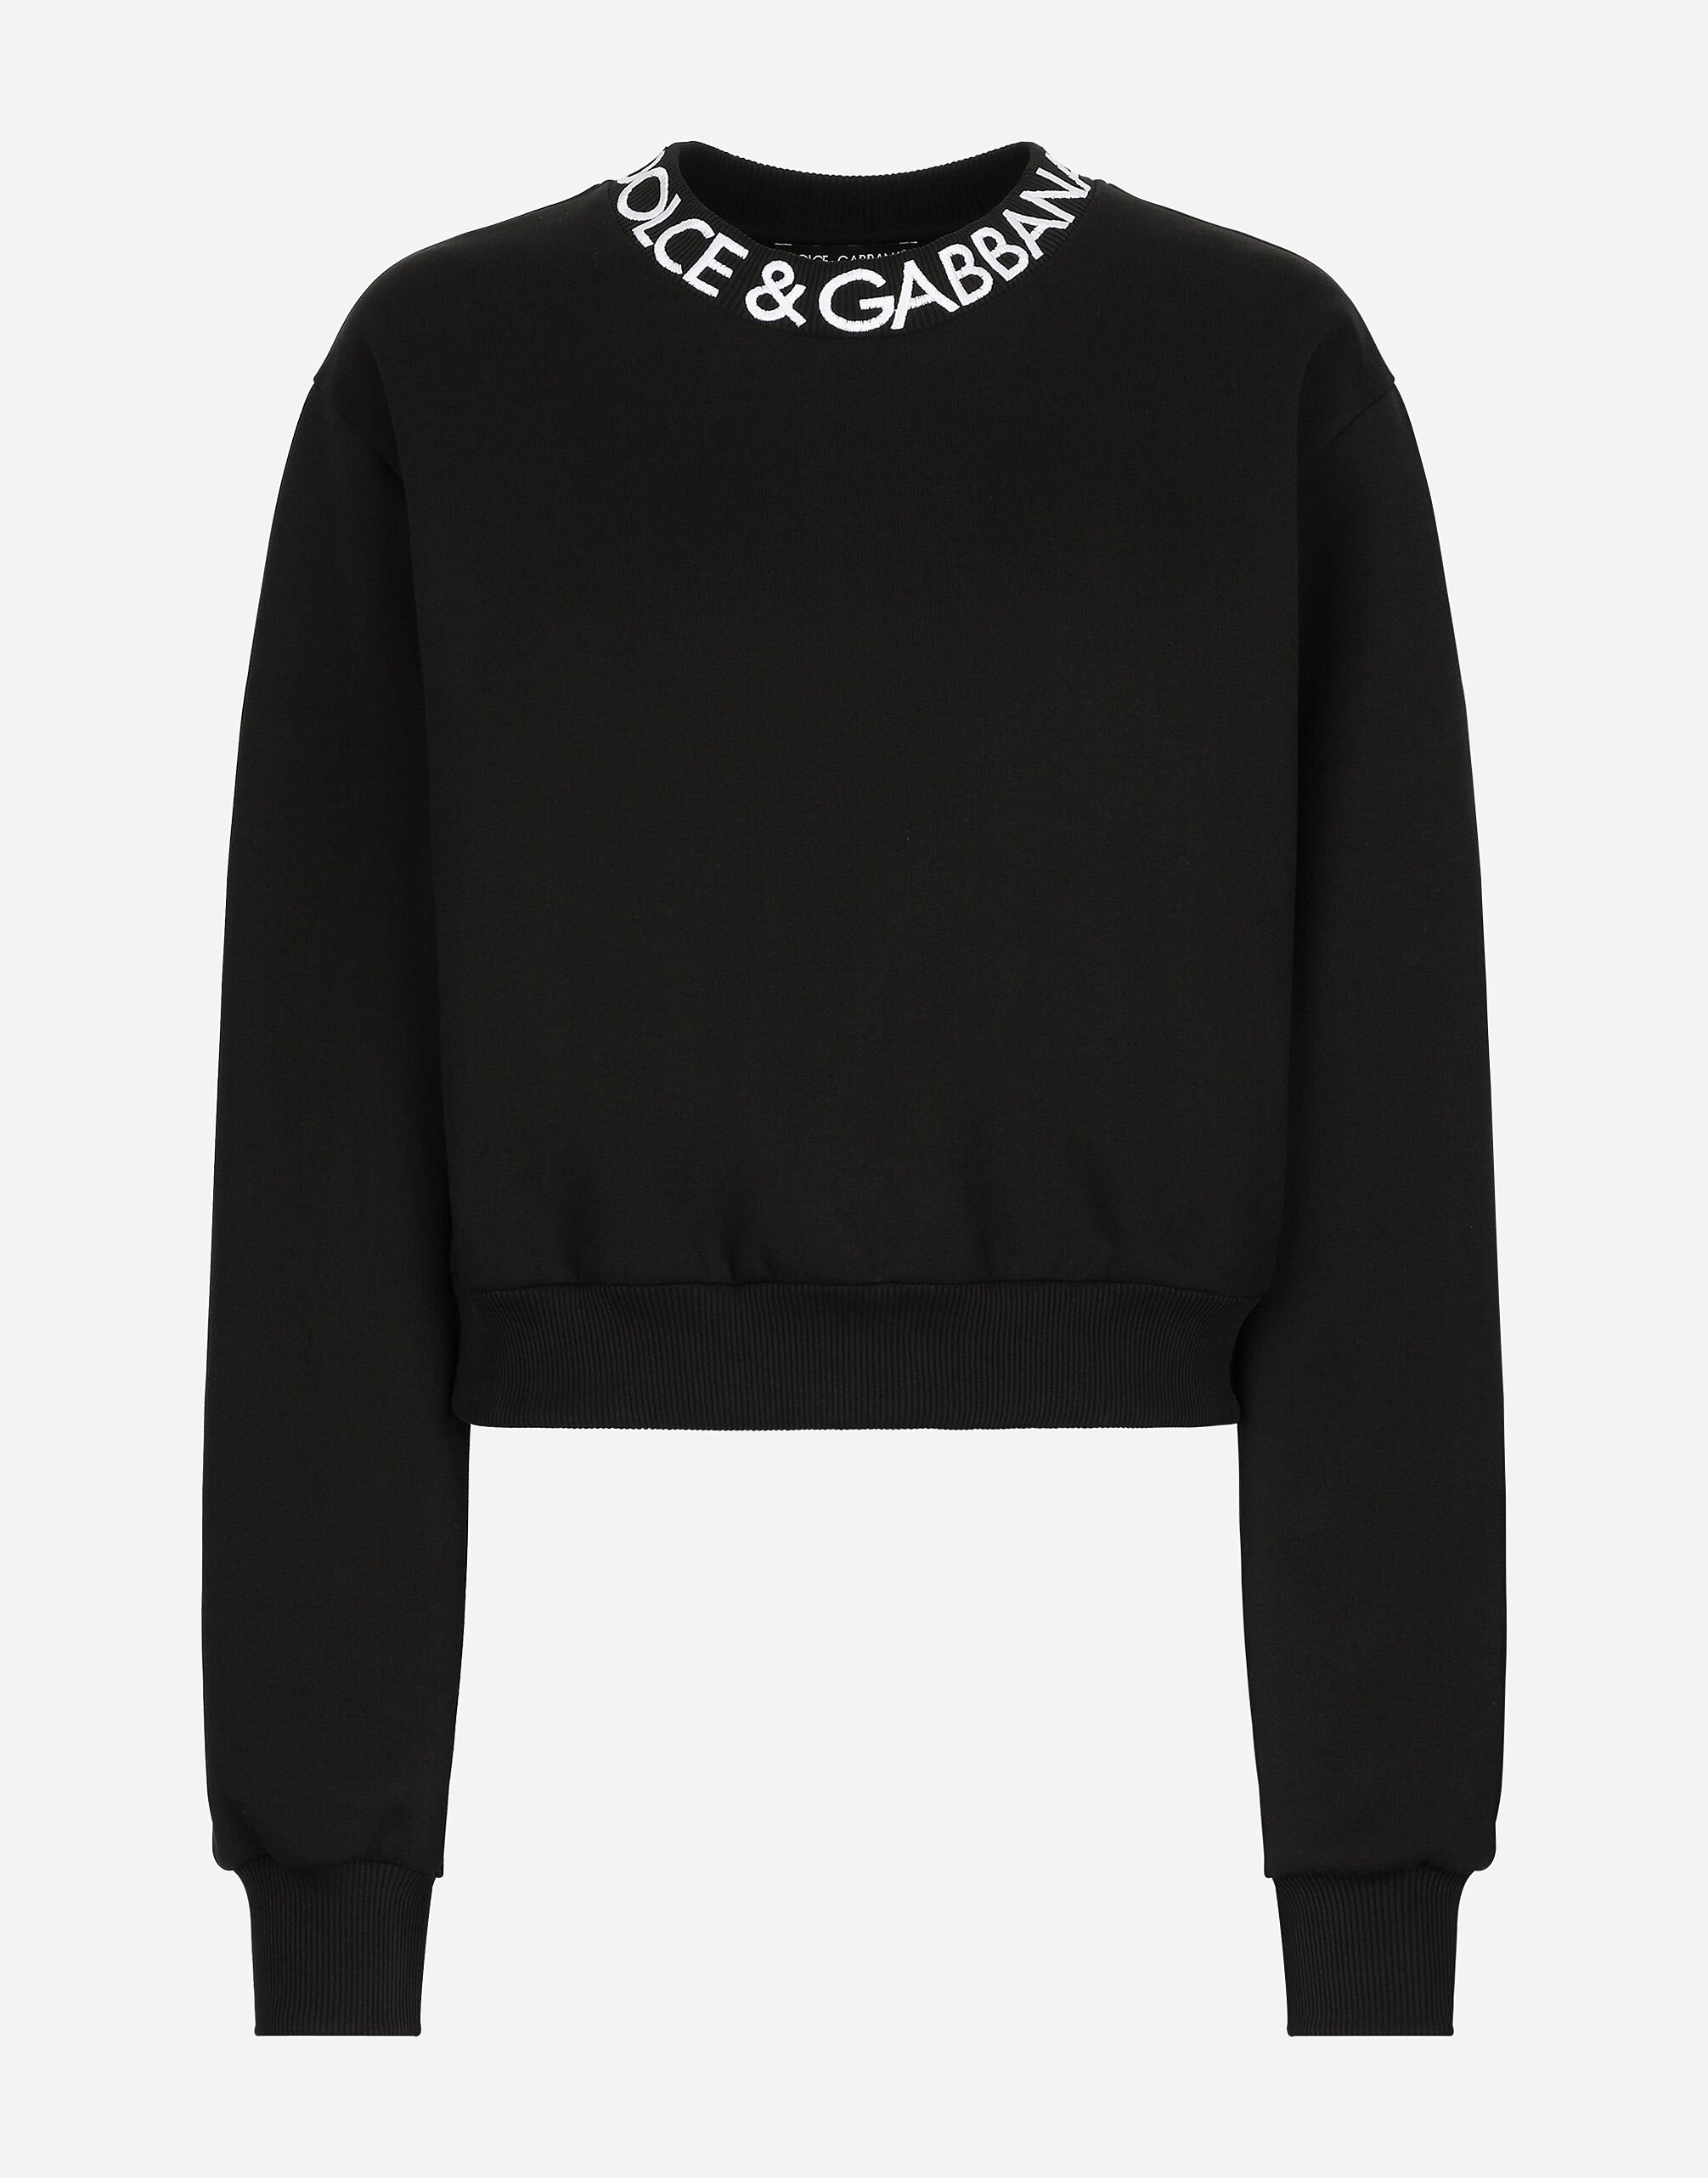 Dolce & Gabbana Sudadera de punto con logotipo Dolce&Gabbana bordado Negro FXE03TJBMQ3